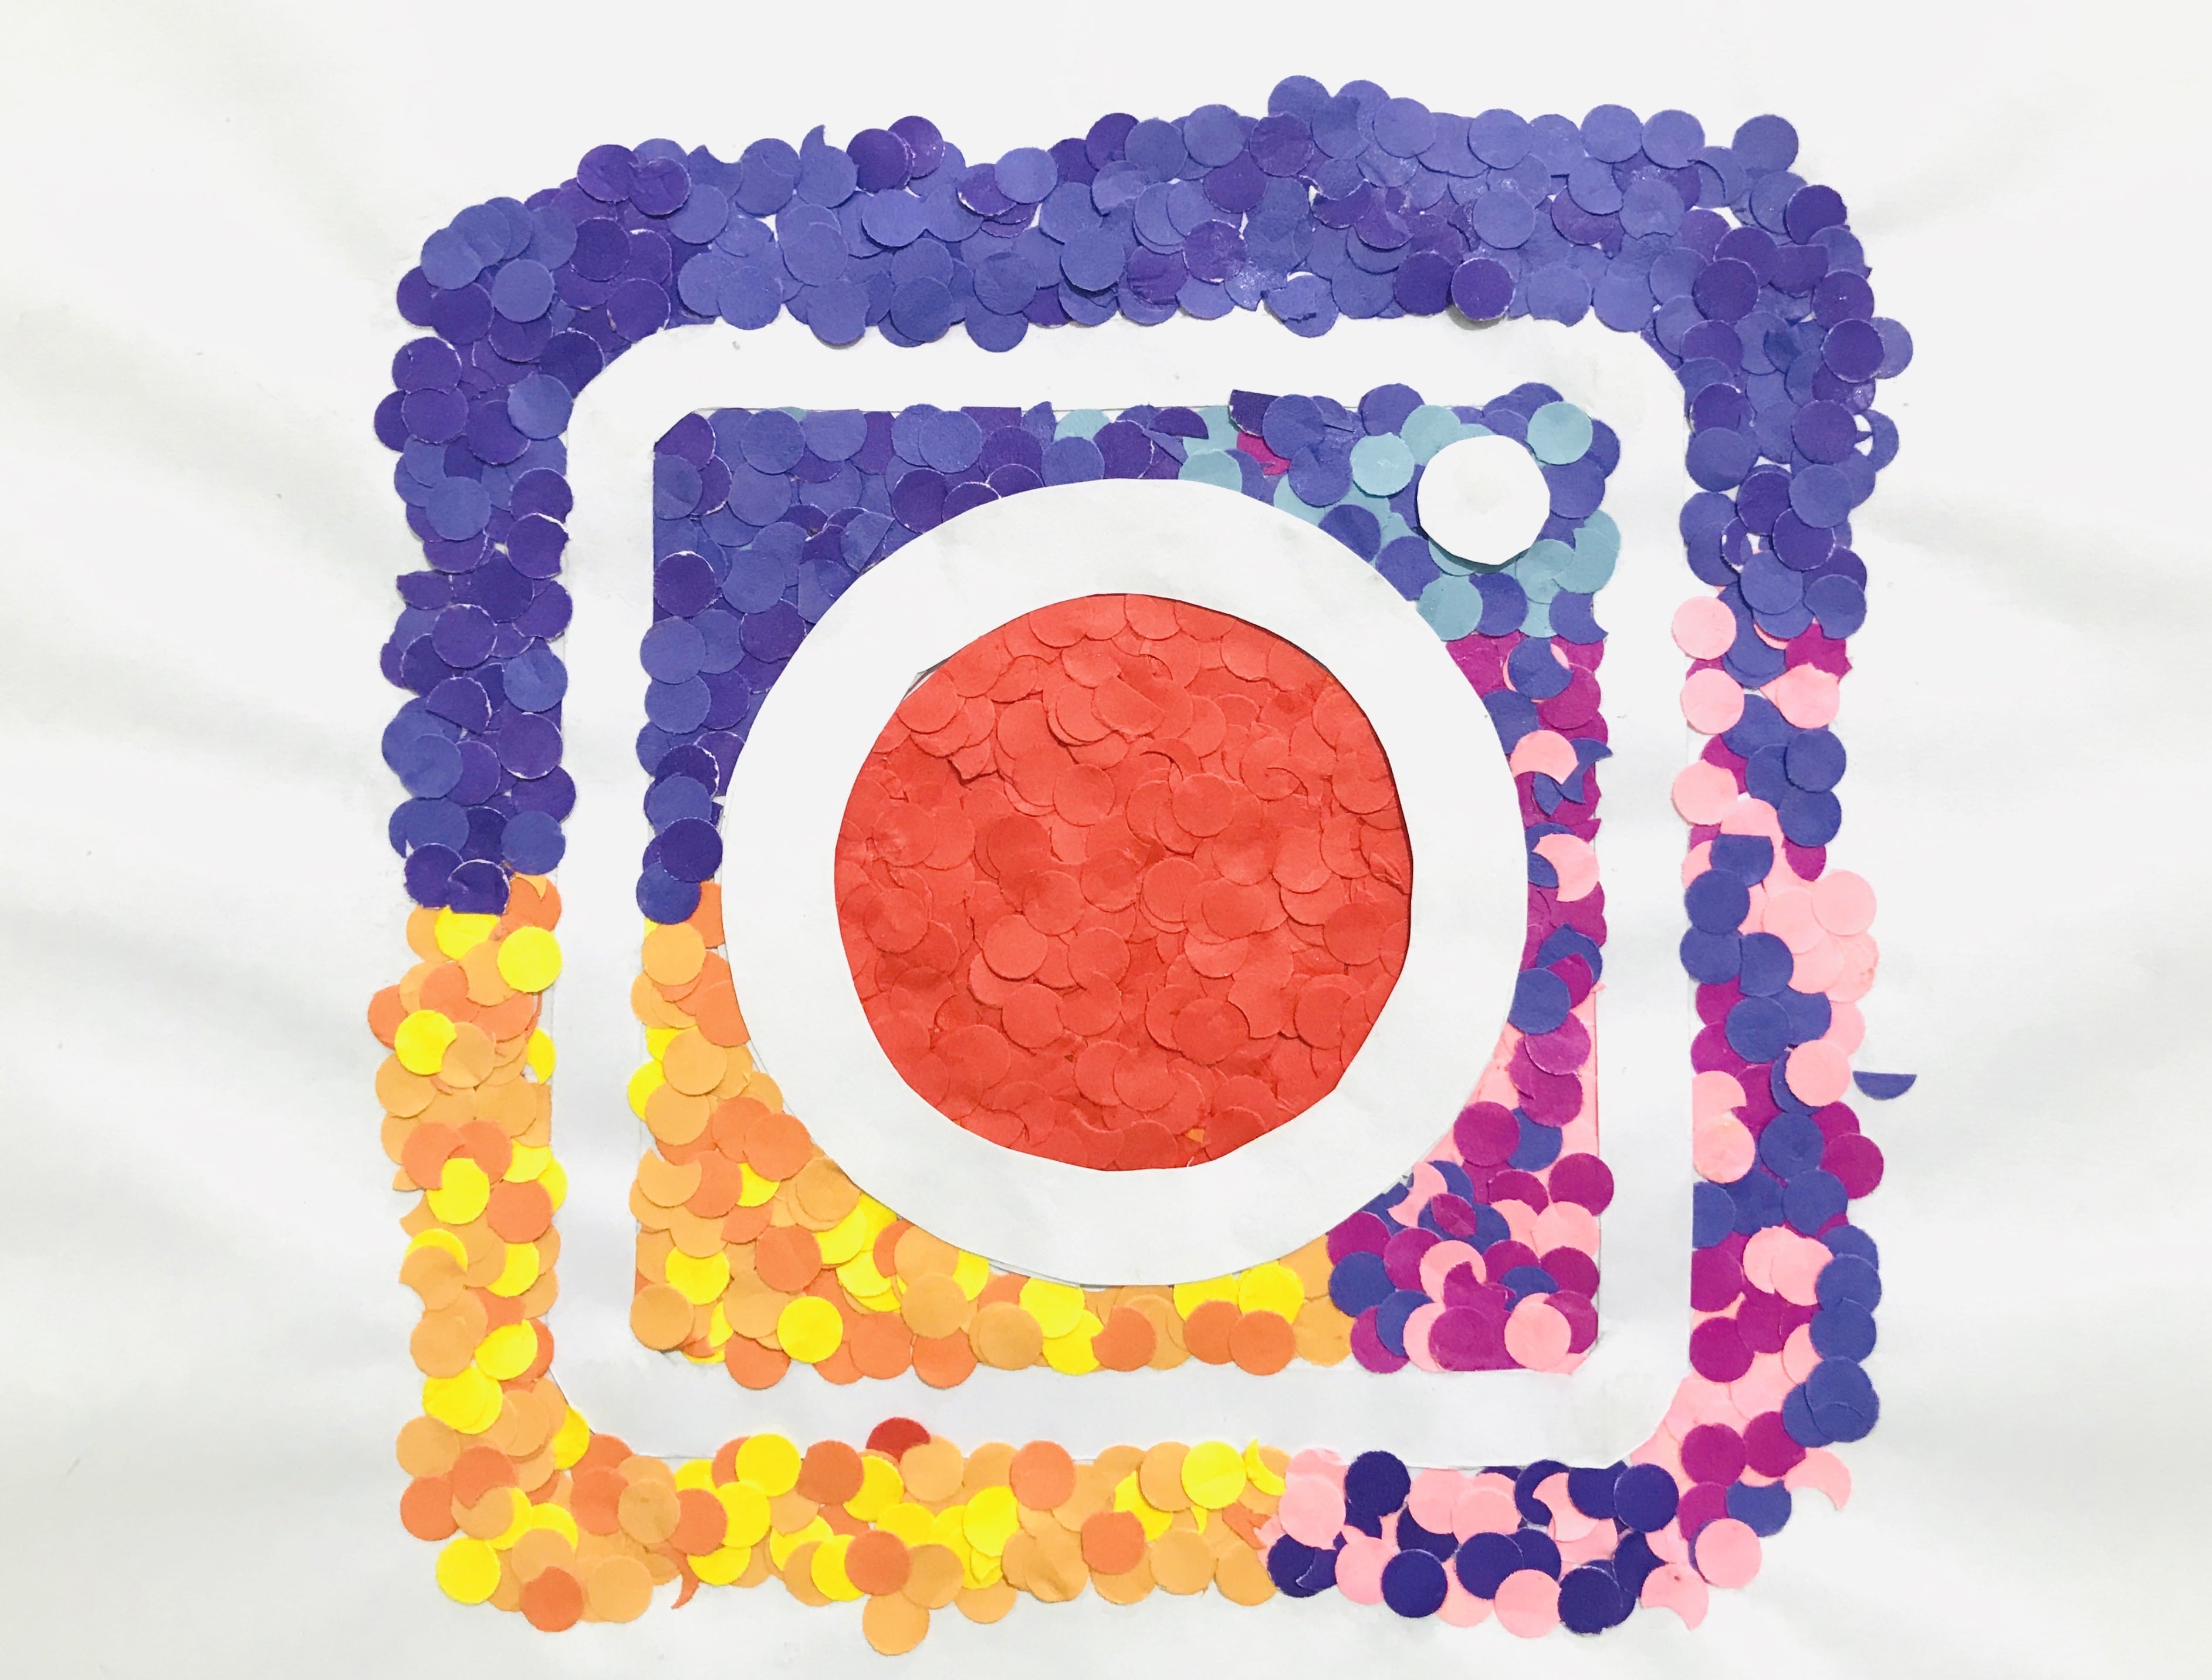 5 méthodes pour développer l’engagement et la portée sur Instagram.